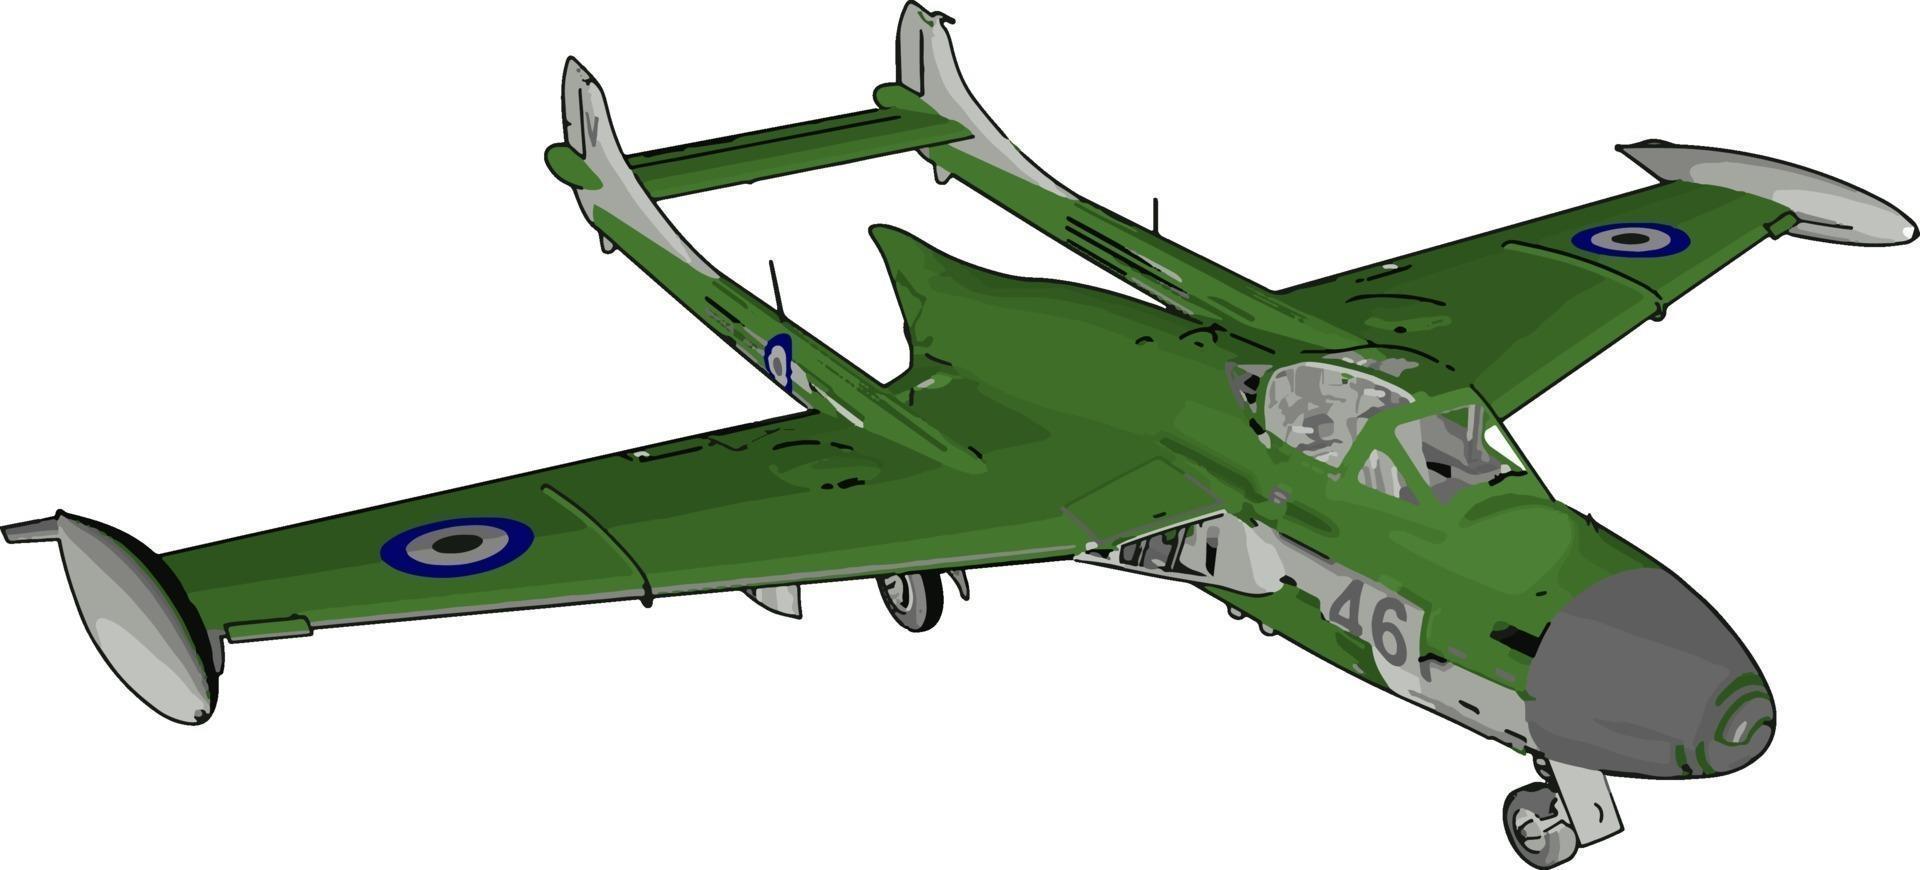 grön flygplan, illustration, vektor på vit bakgrund.